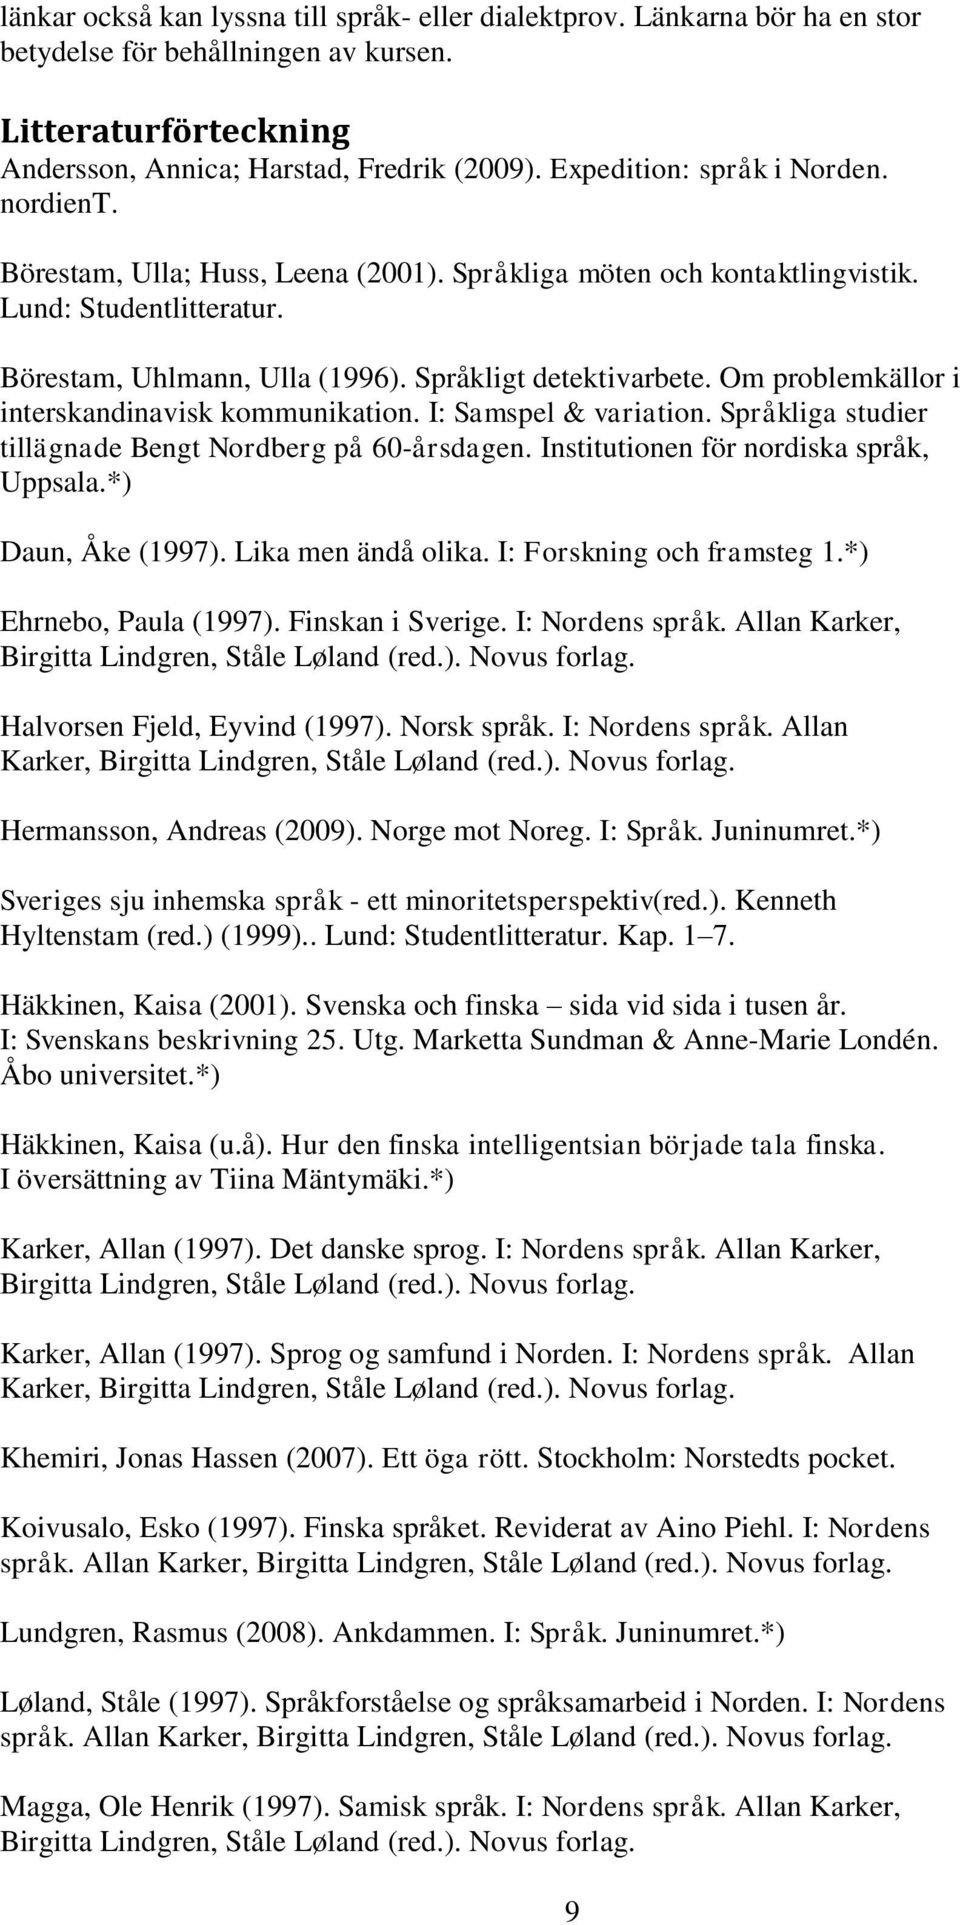 Språkliga studier tillägnade Bengt Nordberg på 60-årsdagen. Institutionen för nordiska språk, Uppsala.*) Daun, Åke (1997). Lika men ändå olika. I: Forskning och framsteg 1.*) Ehrnebo, Paula (1997).